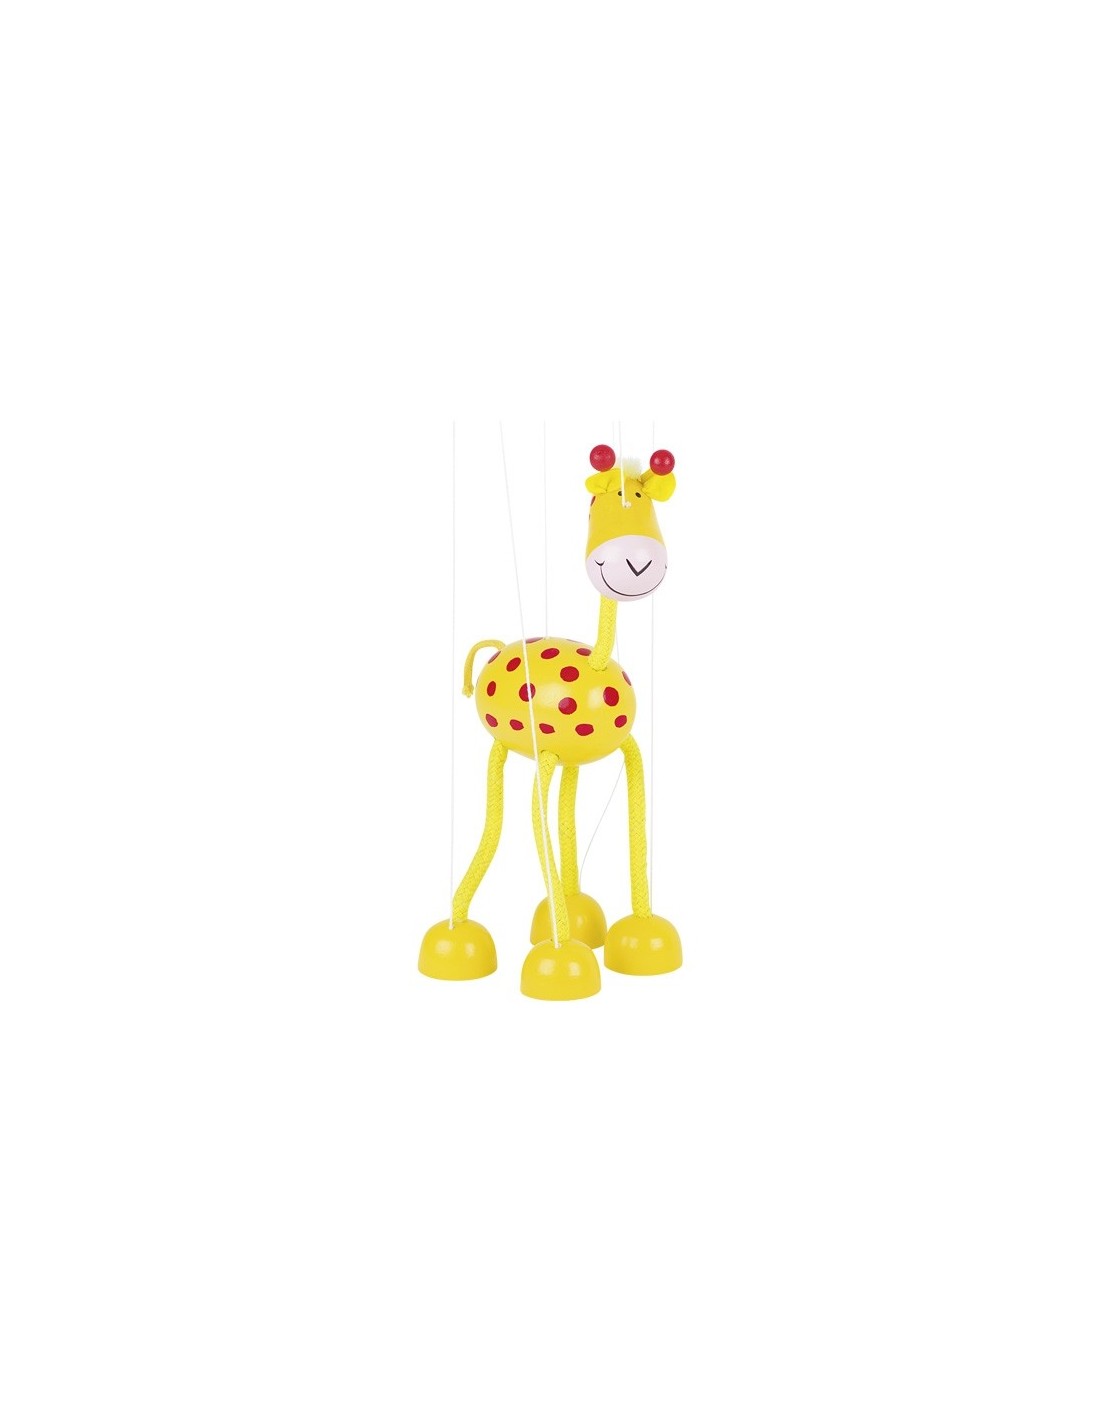 Marioneta y títere de cuerda de madera modelo jirafa juguete clásico y tradicional para niños, niñas